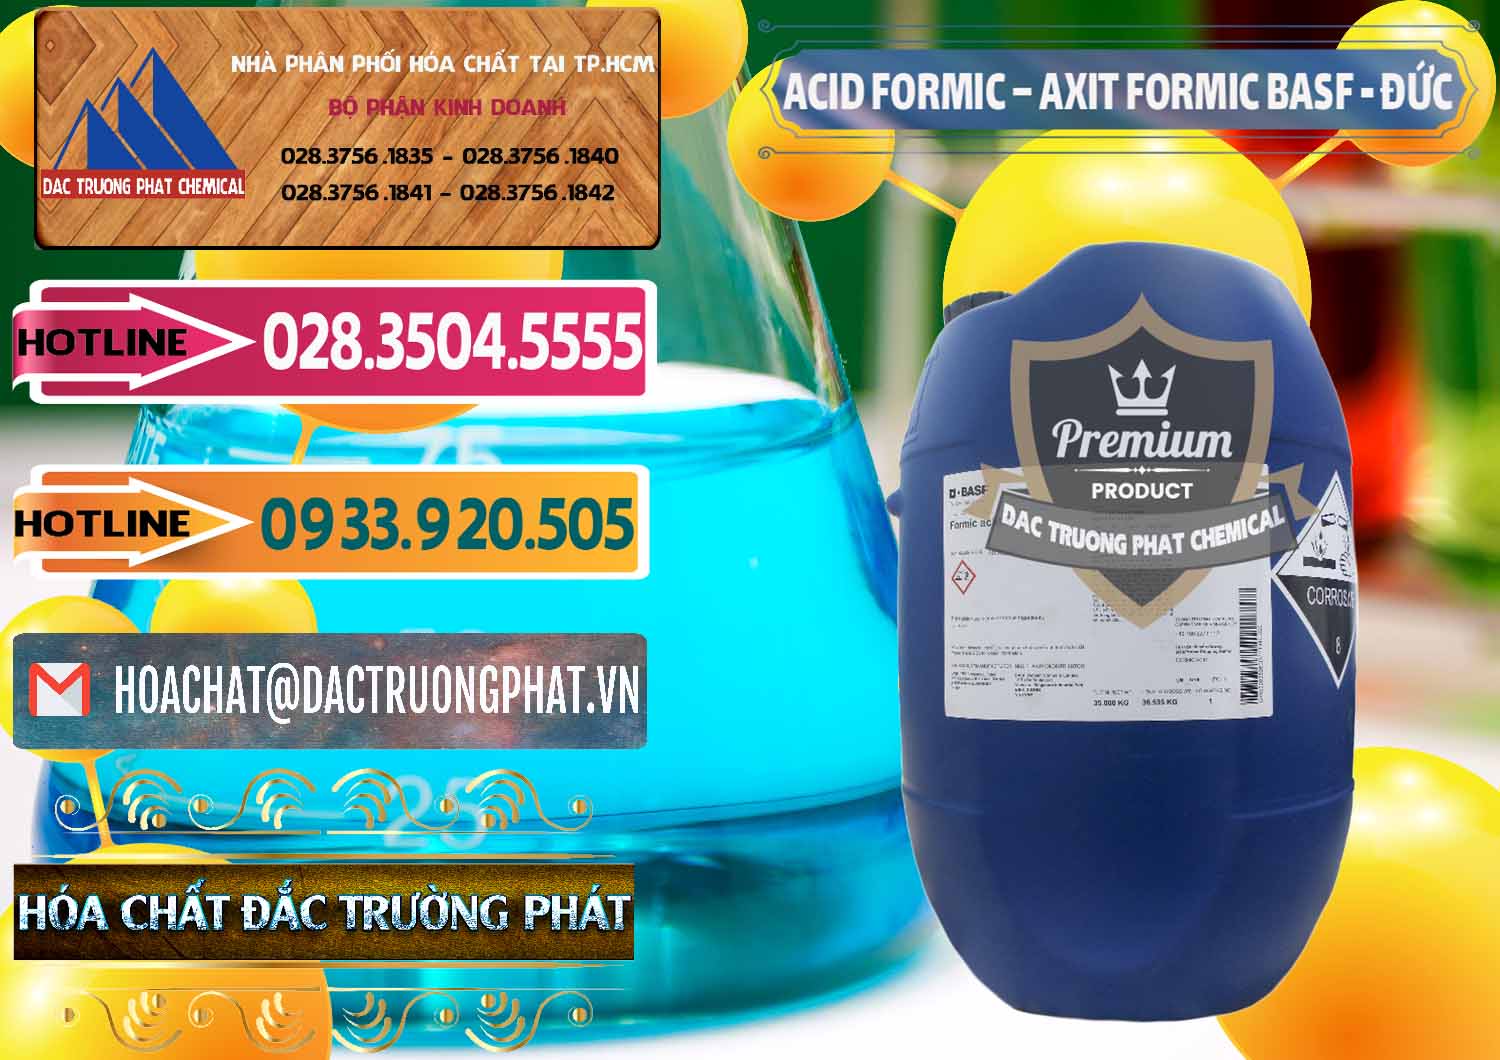 Nơi chuyên nhập khẩu - bán Acid Formic - Axit Formic BASF Đức Germany - 0028 - Đơn vị cung cấp _ bán hóa chất tại TP.HCM - dactruongphat.vn